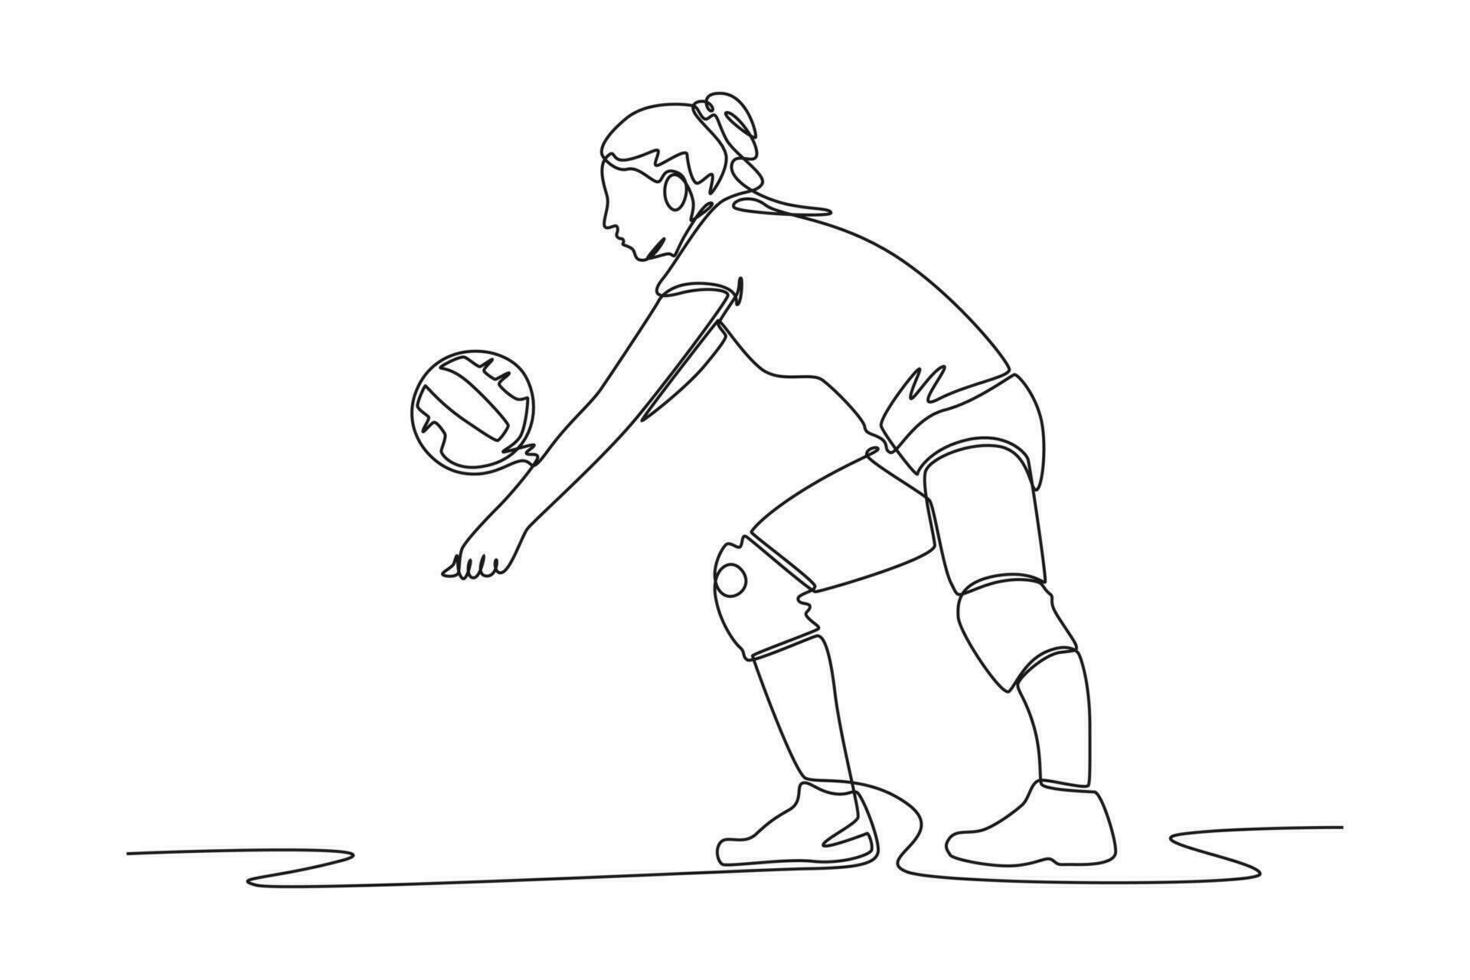 kontinuierlich einer Linie Zeichnung Jugend Sport Konzept. Single Linie zeichnen Design Vektor Grafik Illustration.